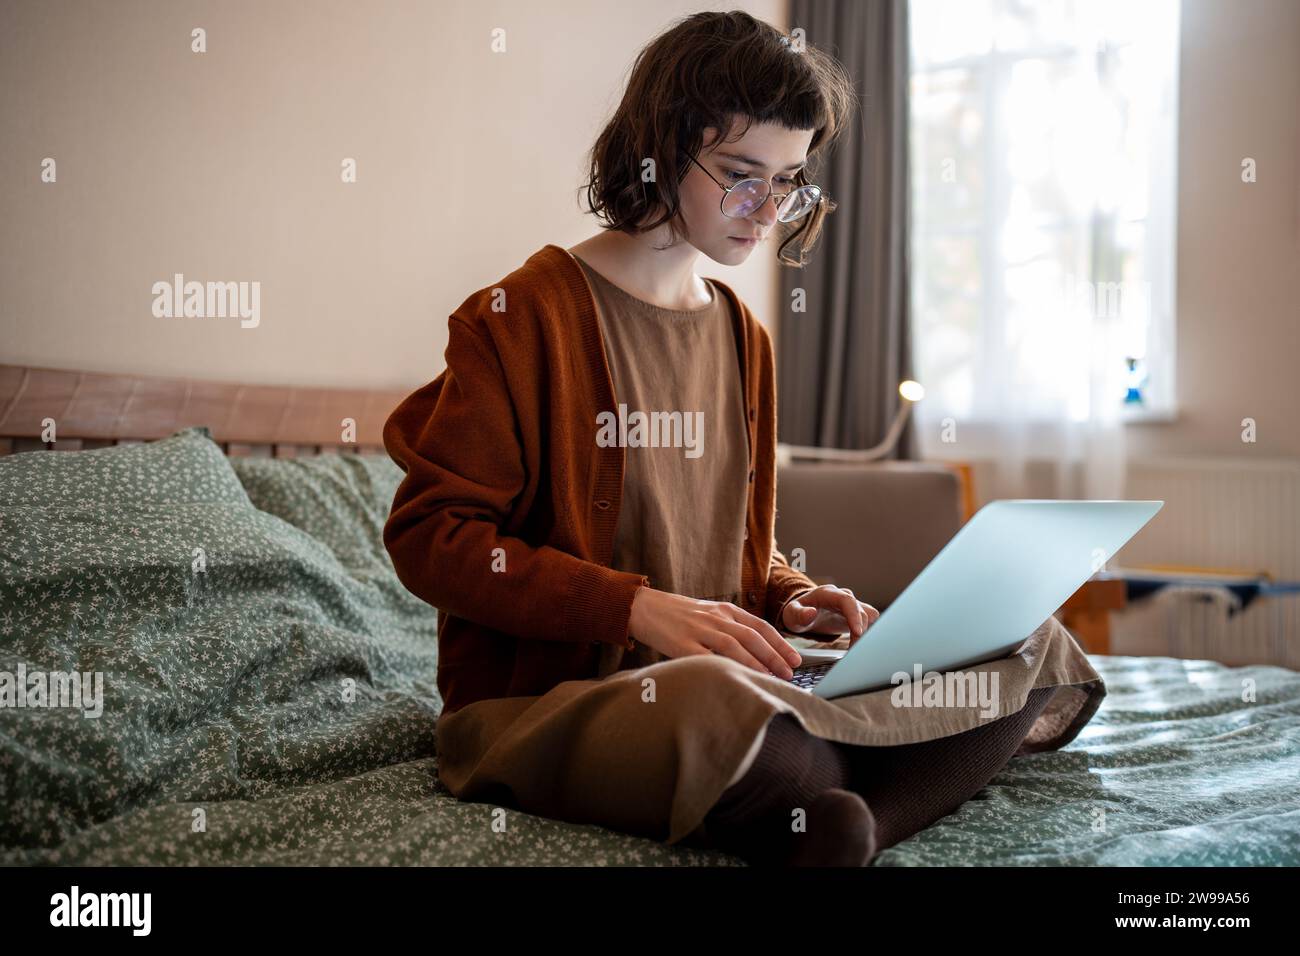 Concentrata adolescente pensiva che lavora come freelance, studia online a casa utilizzando un computer portatile Foto Stock